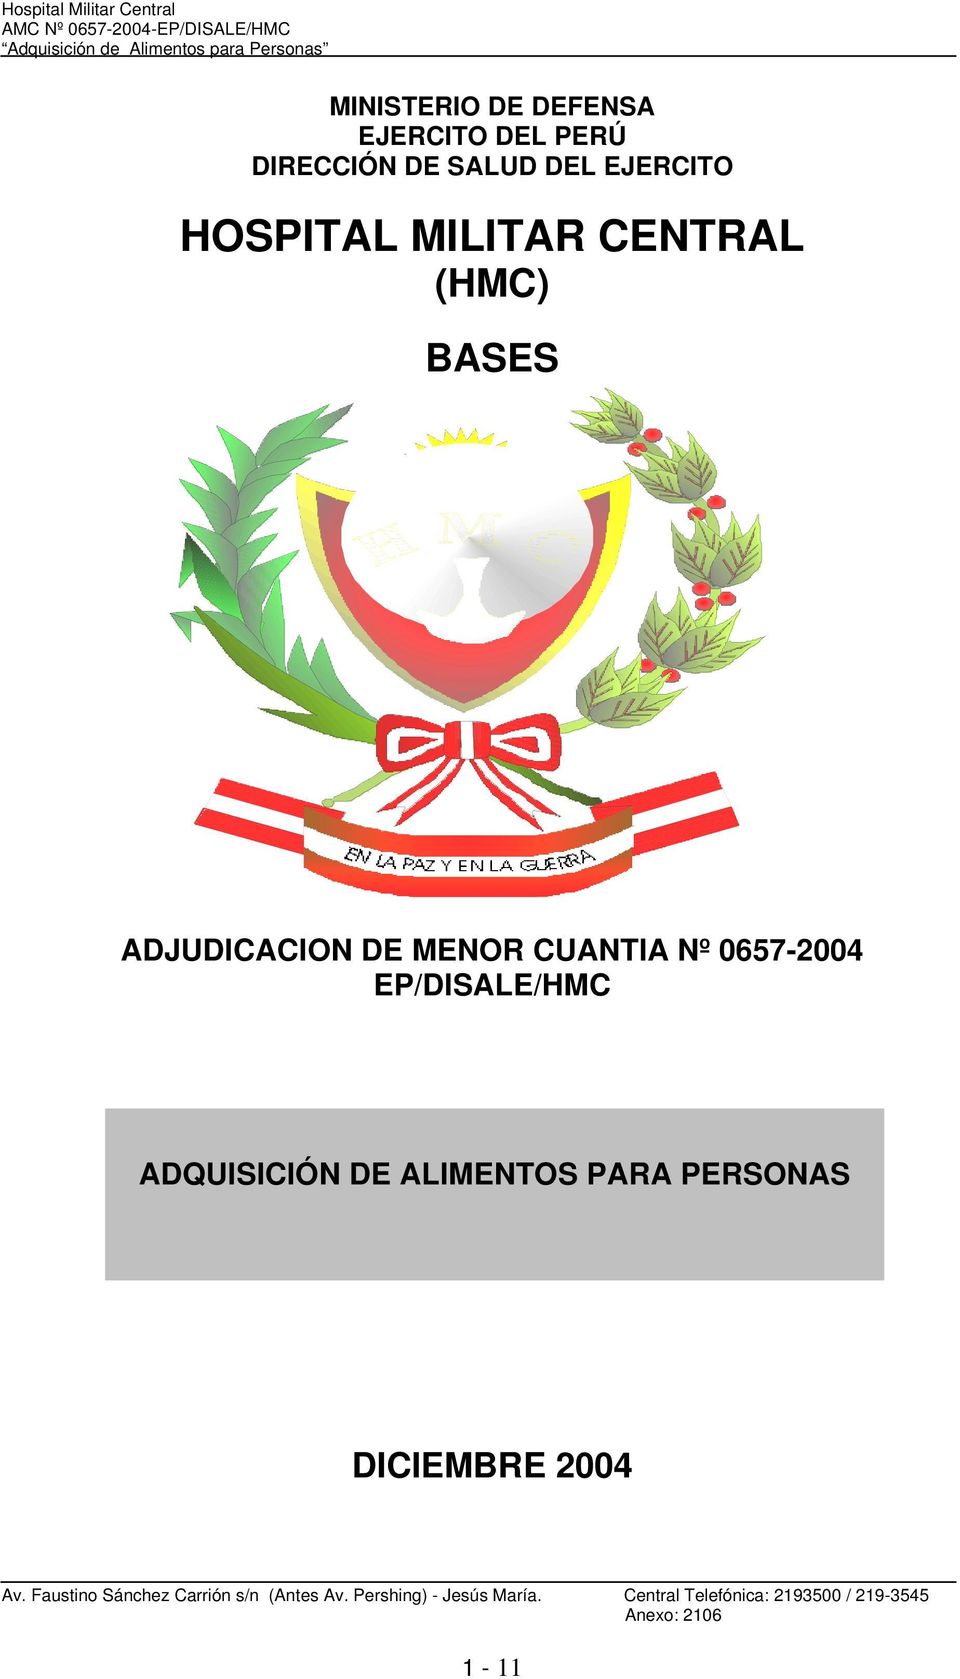 ADJUDICACION DE MENOR CUANTIA Nº 0657-2004